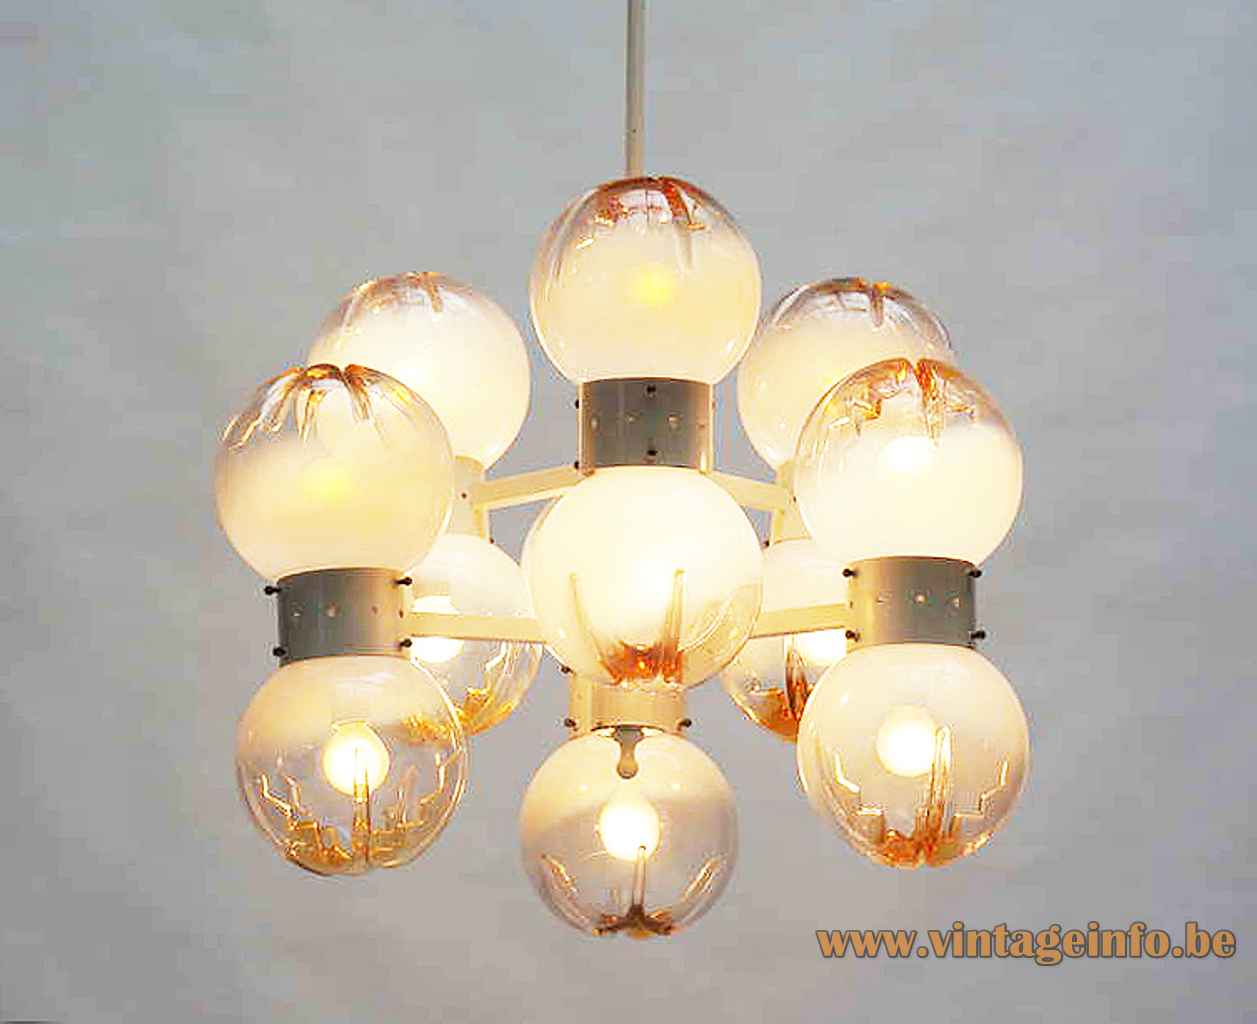 AV Mazzega 12 globes chandelier chrome lampshade white & orange glass spheres 1960s 1970s Murano Italy